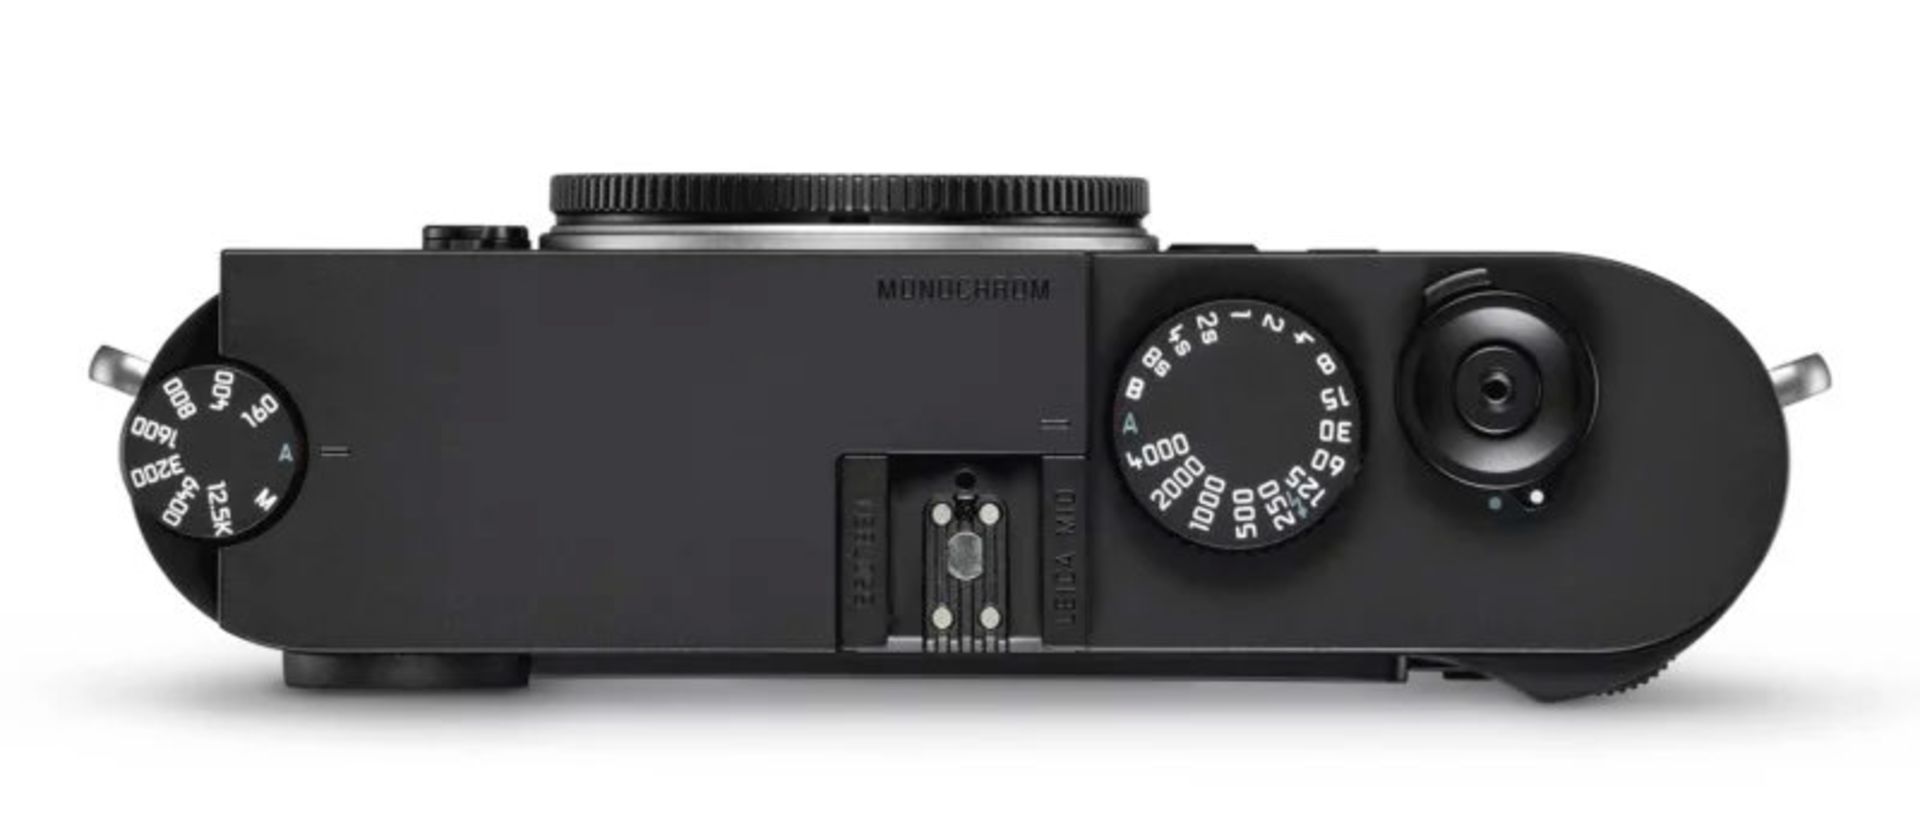 مرجع متخصصين ايران دوربين مونوكروم لايكا M10 / Leica M10 monochrome